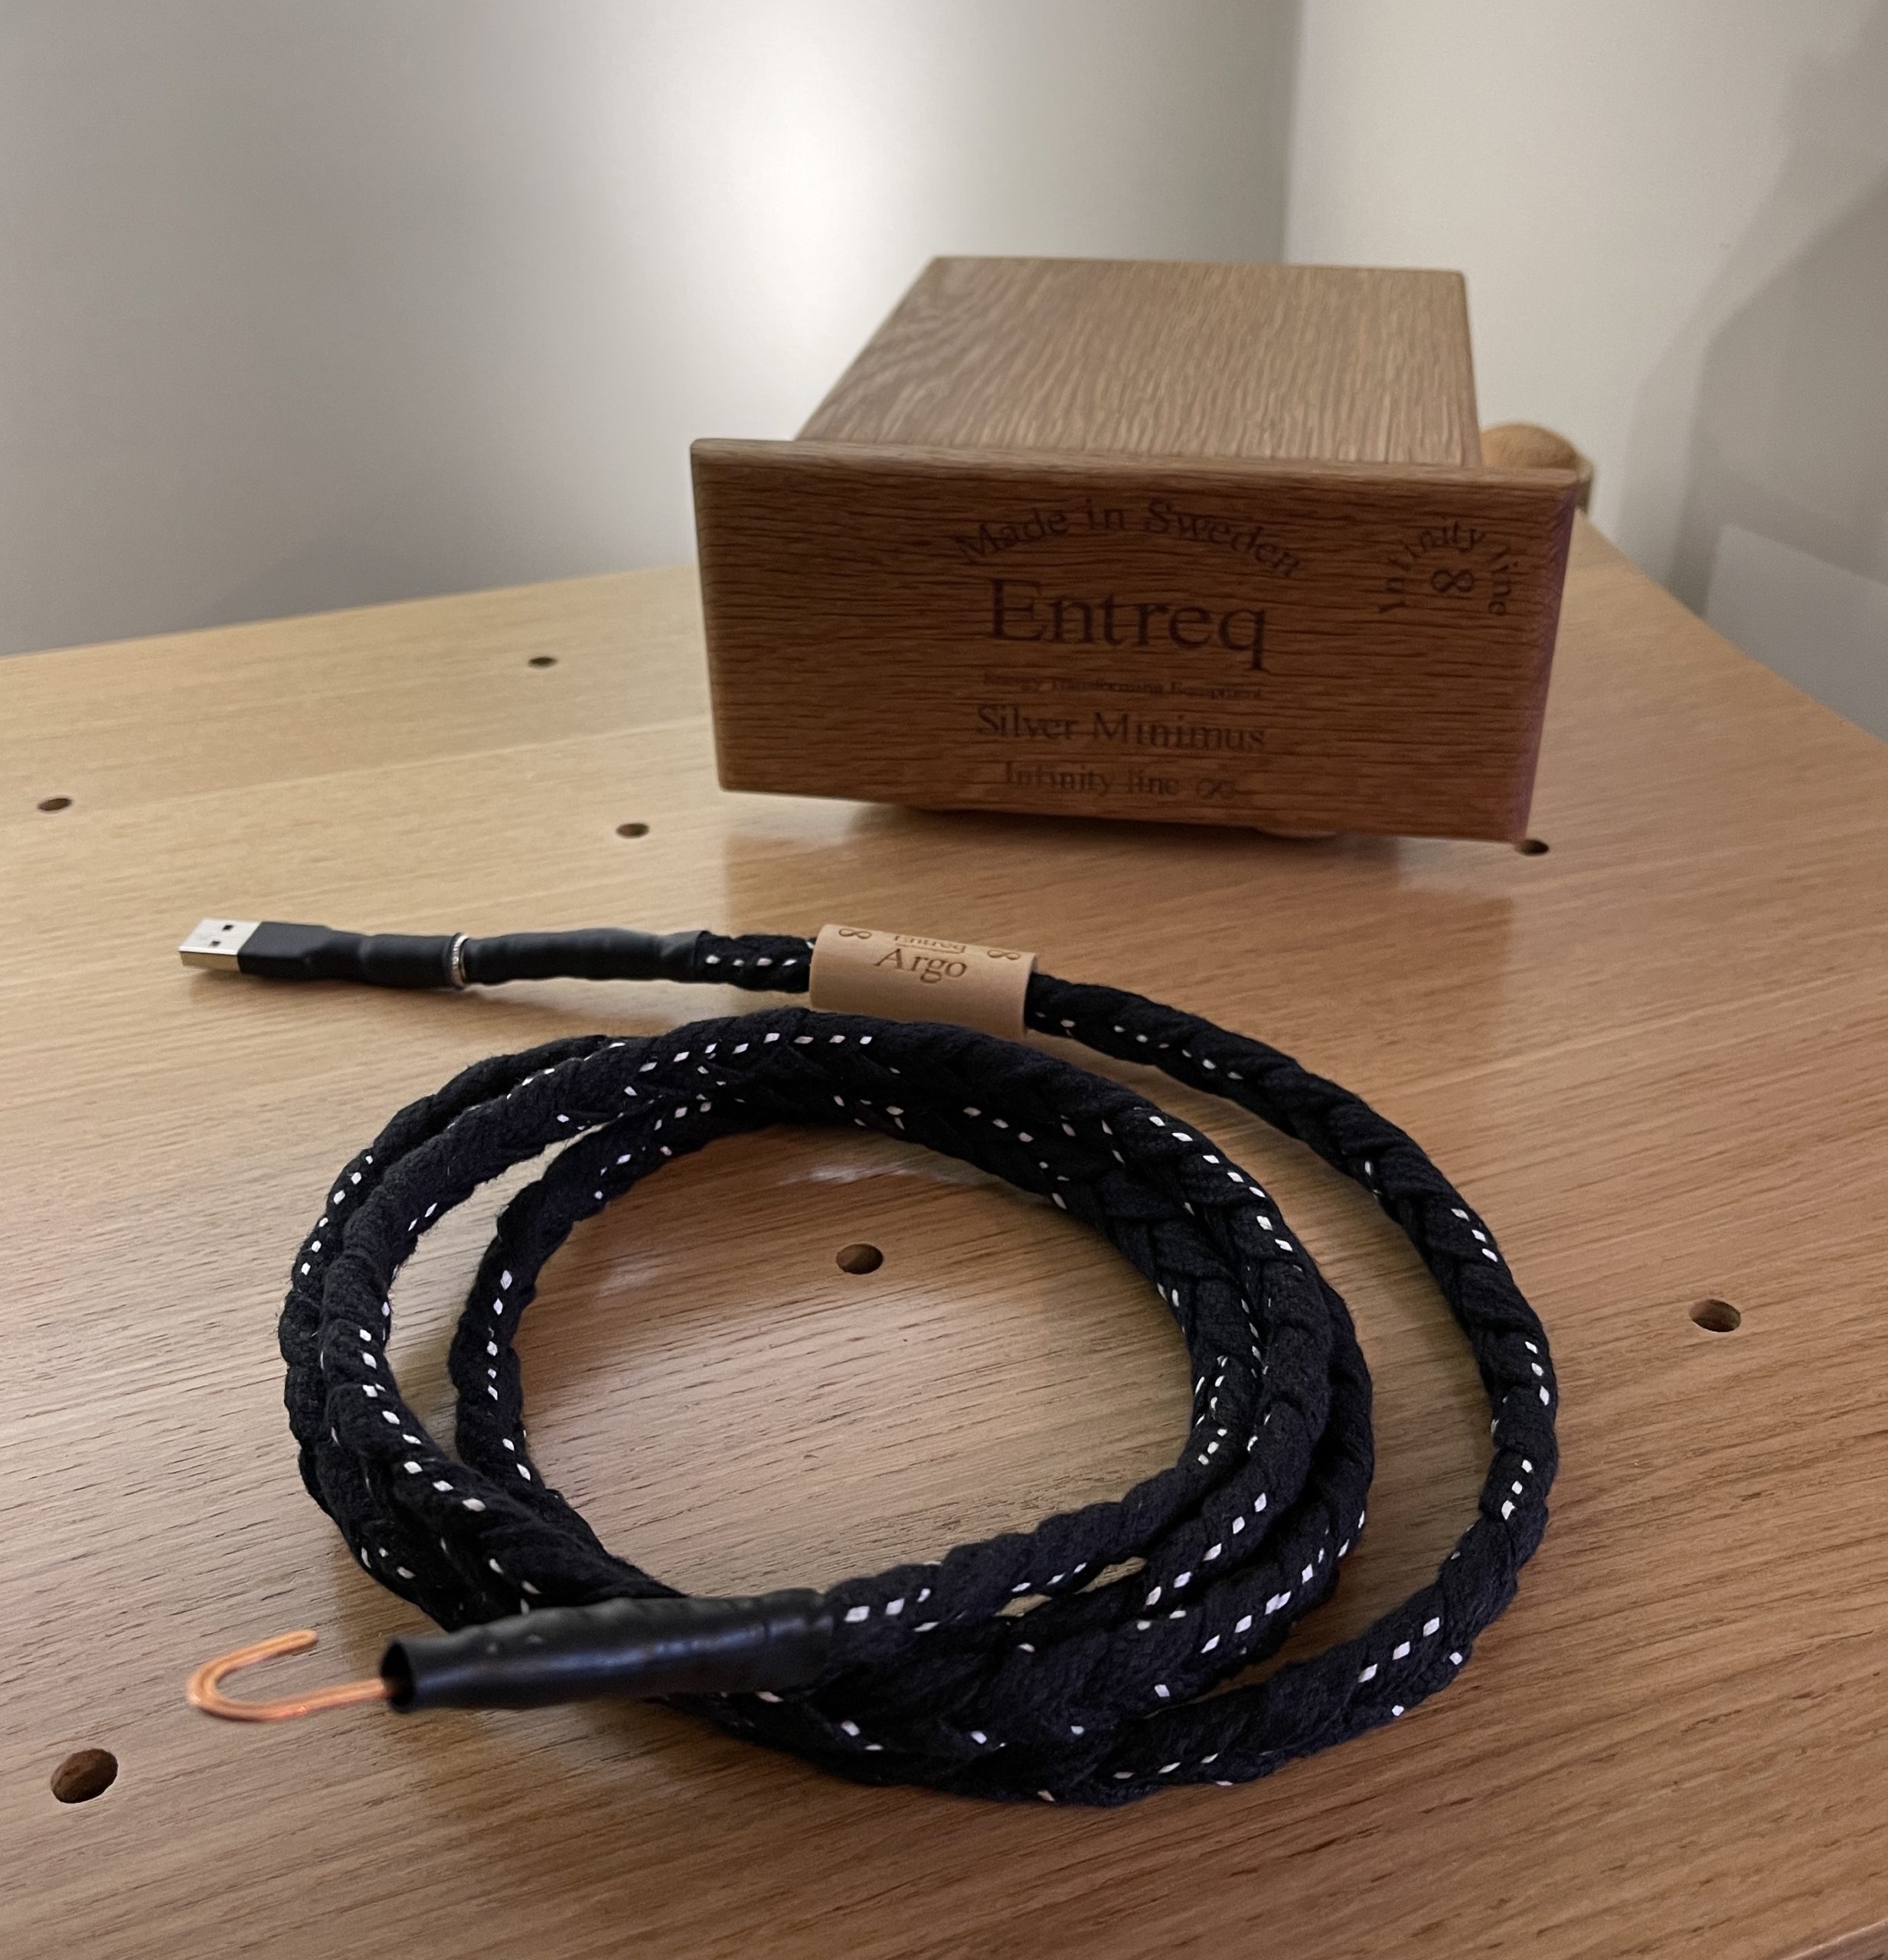 Entreq Silver Argo Grounding Kit @ Audio Therapy